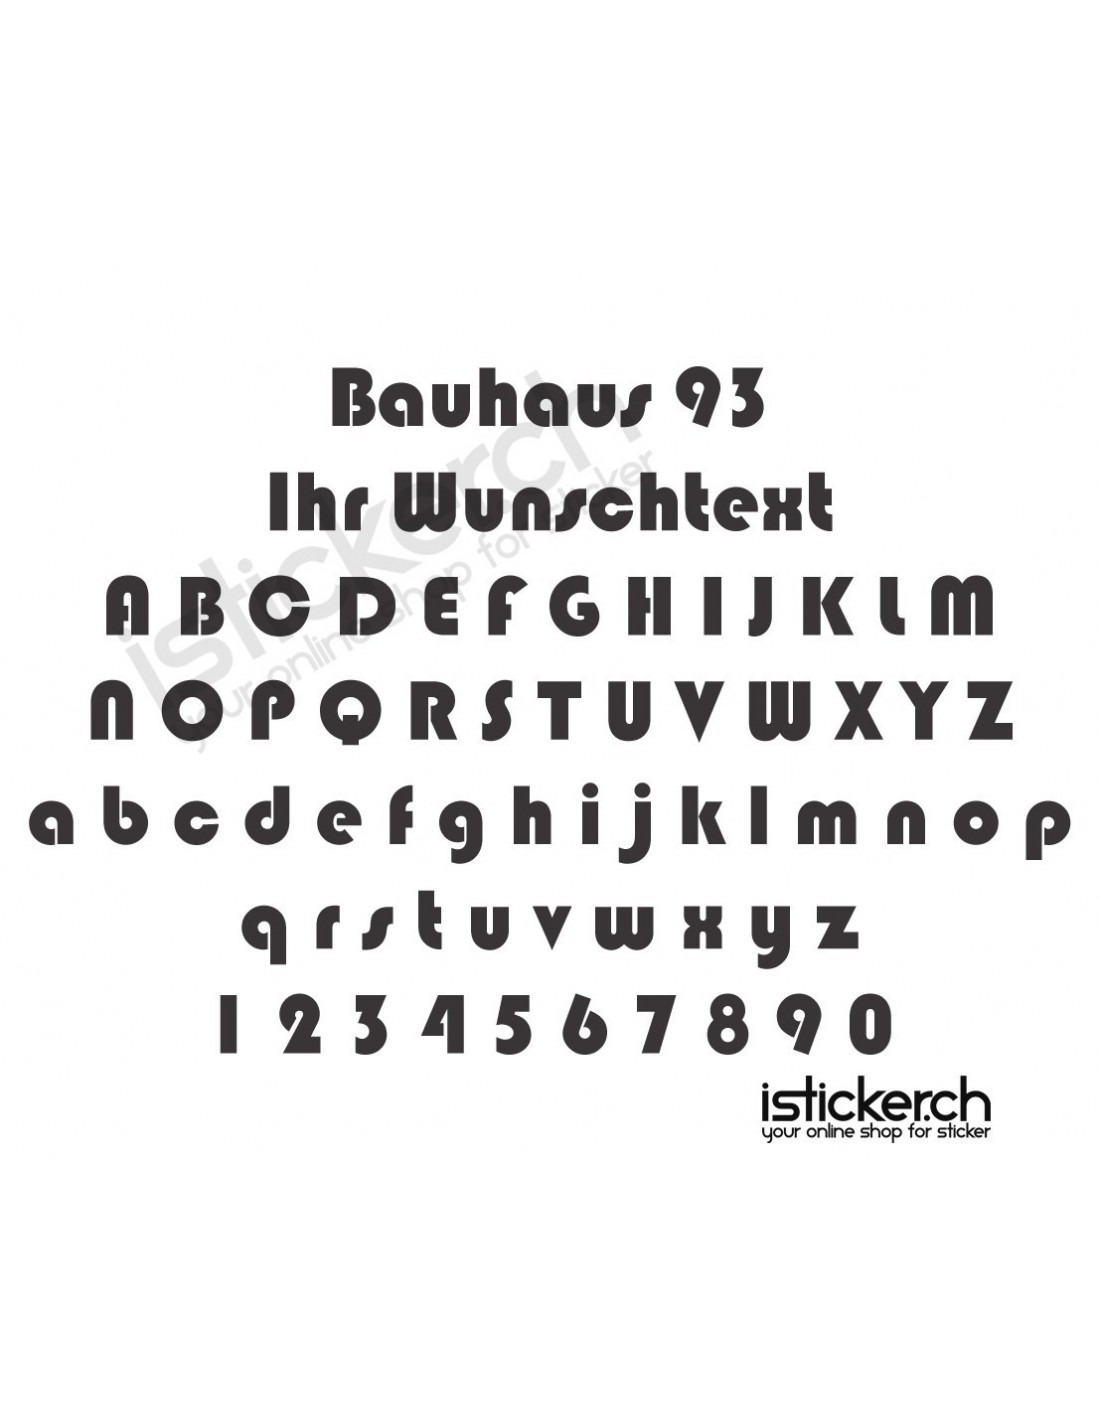 Bauhaus 93 Schriftart - isticker.ch
